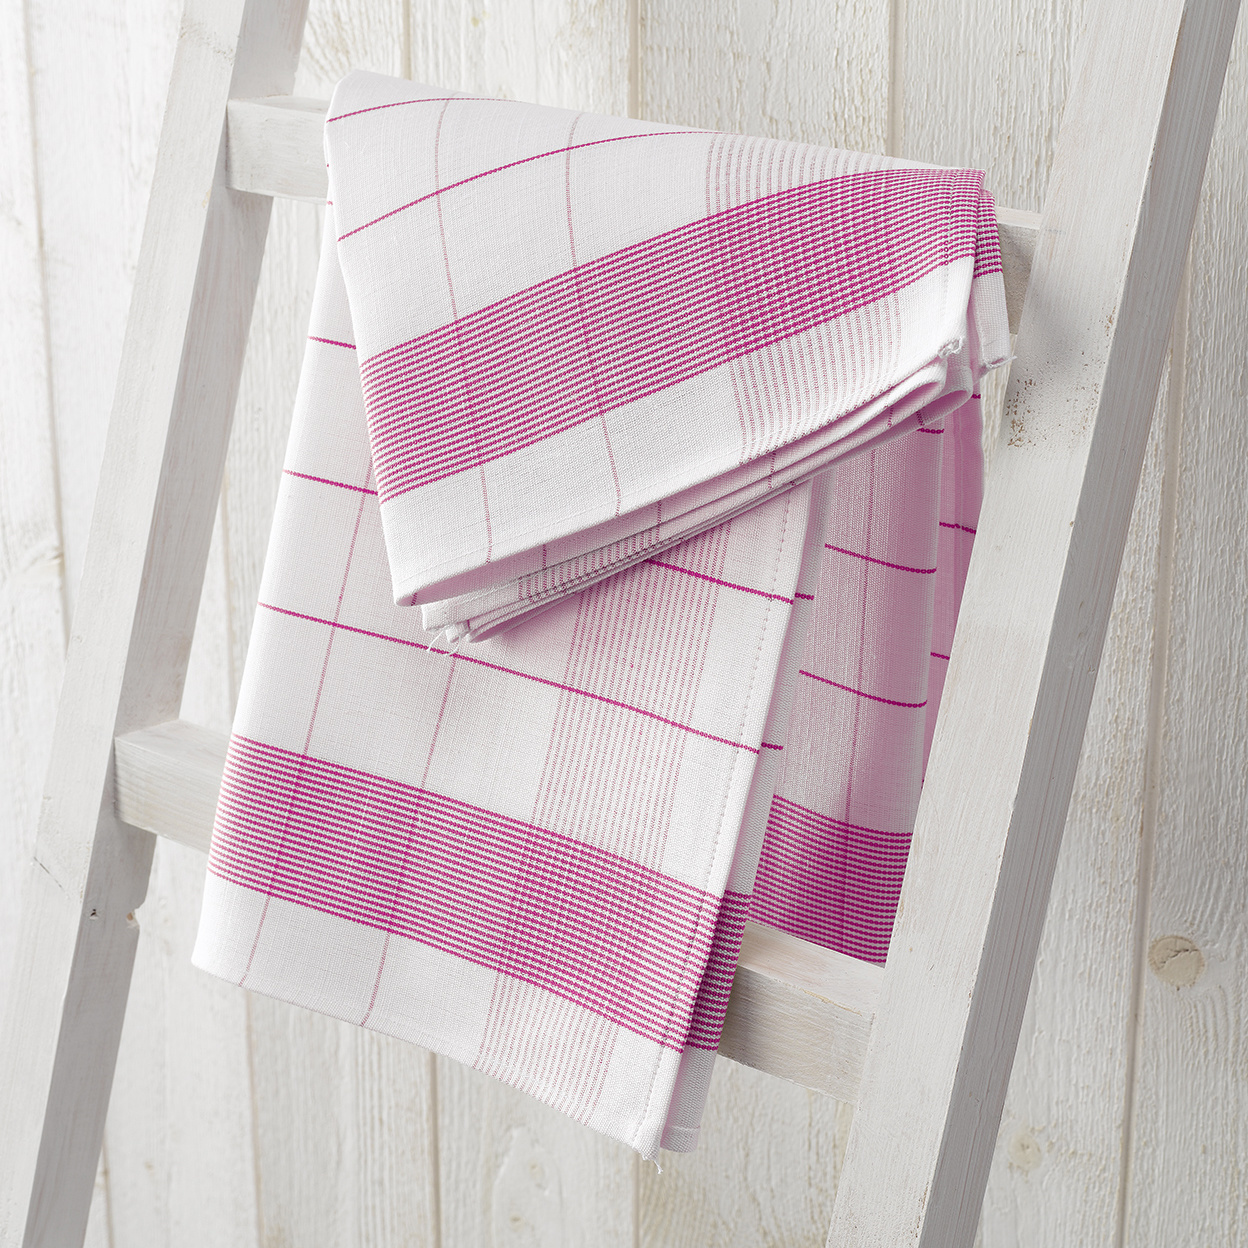 De Witte Lietaer Tea towel Mixte, Fuchsia - 2 pieces - 65 x 65 cm - Cotton/Linen